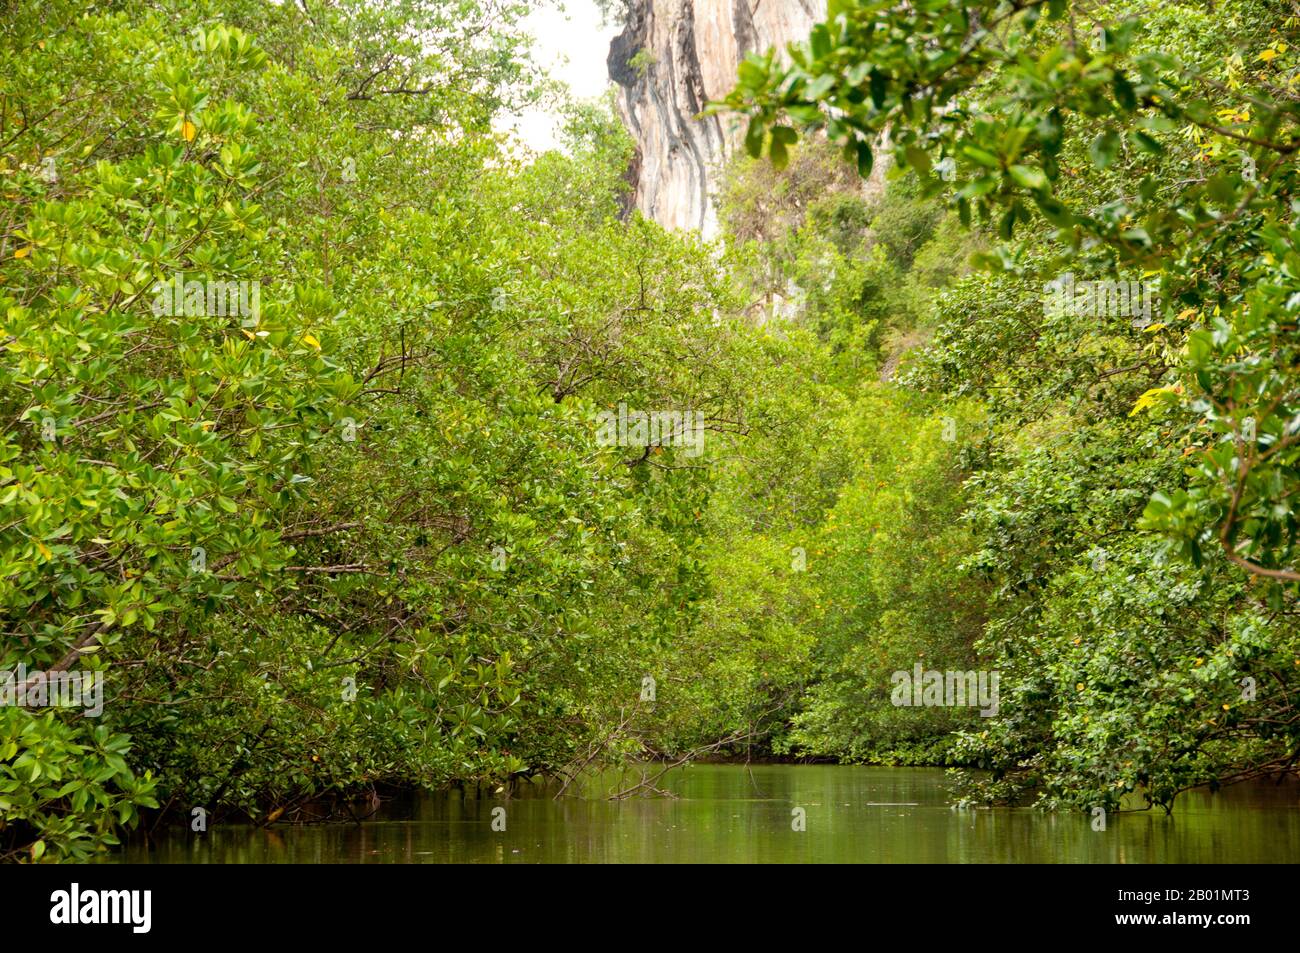 Thailandia: Mangrovie, Than Bokkharani National Park, provincia di Krabi. Il Parco Nazionale di Than Bokkharani si trova nella provincia di Krabi a circa 45 chilometri (28 miglia) a nord-ovest della città di Krabi. Il parco copre un'area di 121 chilometri quadrati (47 miglia quadrate) ed è caratterizzato da una serie di affioramenti calcarei, foreste pluviali sempreverdi, foreste di mangrovie, torbiere e molte isole. Ci sono anche numerose grotte e complessi rupestri con alcune spettacolari stalagmiti e stalattiti. Il Bokkharani è incentrato su due famose grotte, Tham Lot e Tham Phi Hua. Foto Stock